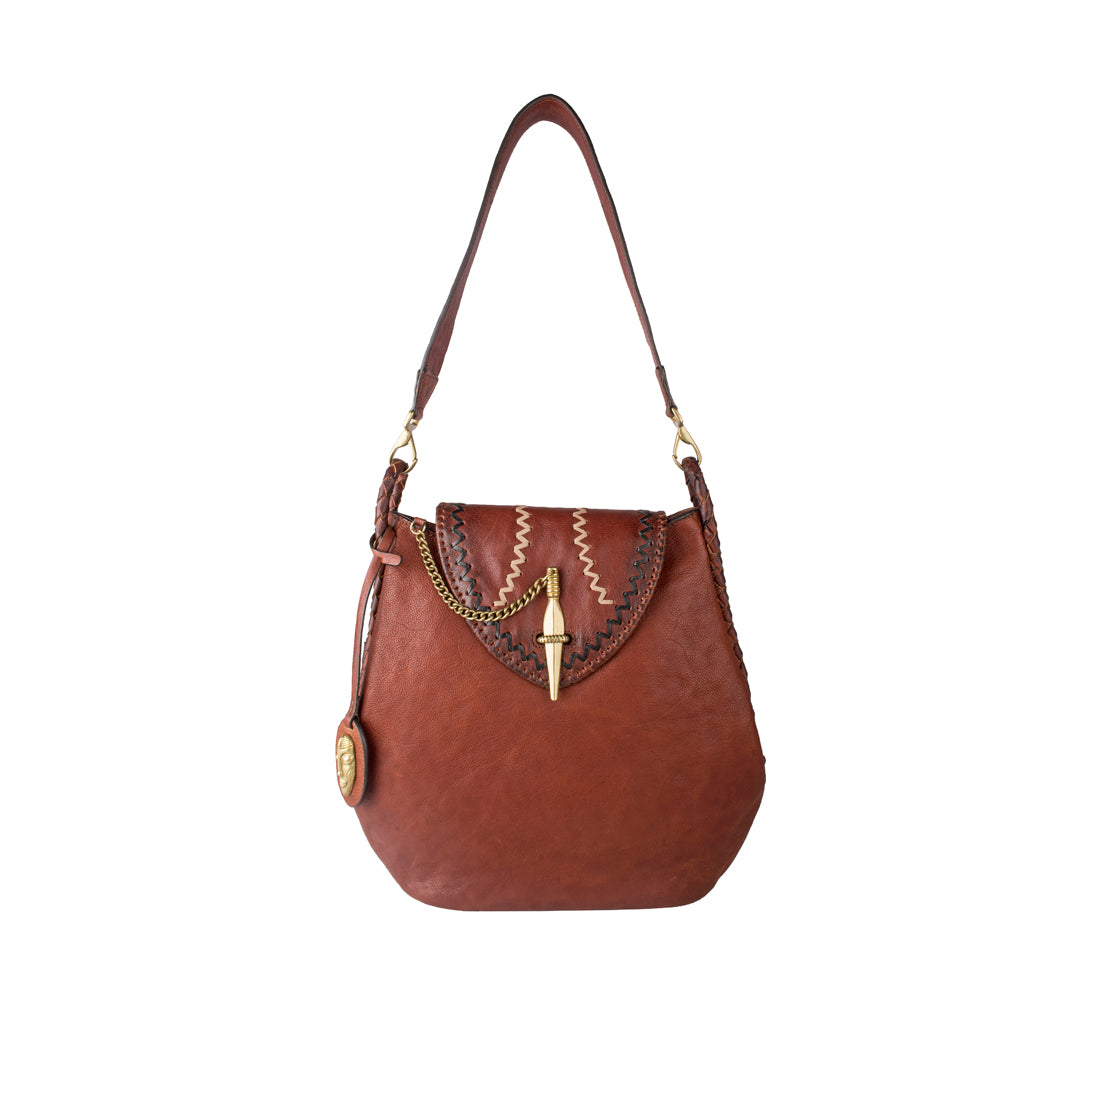 Buy Hidesign Women's Tote Bag (Brown) at Amazon.in